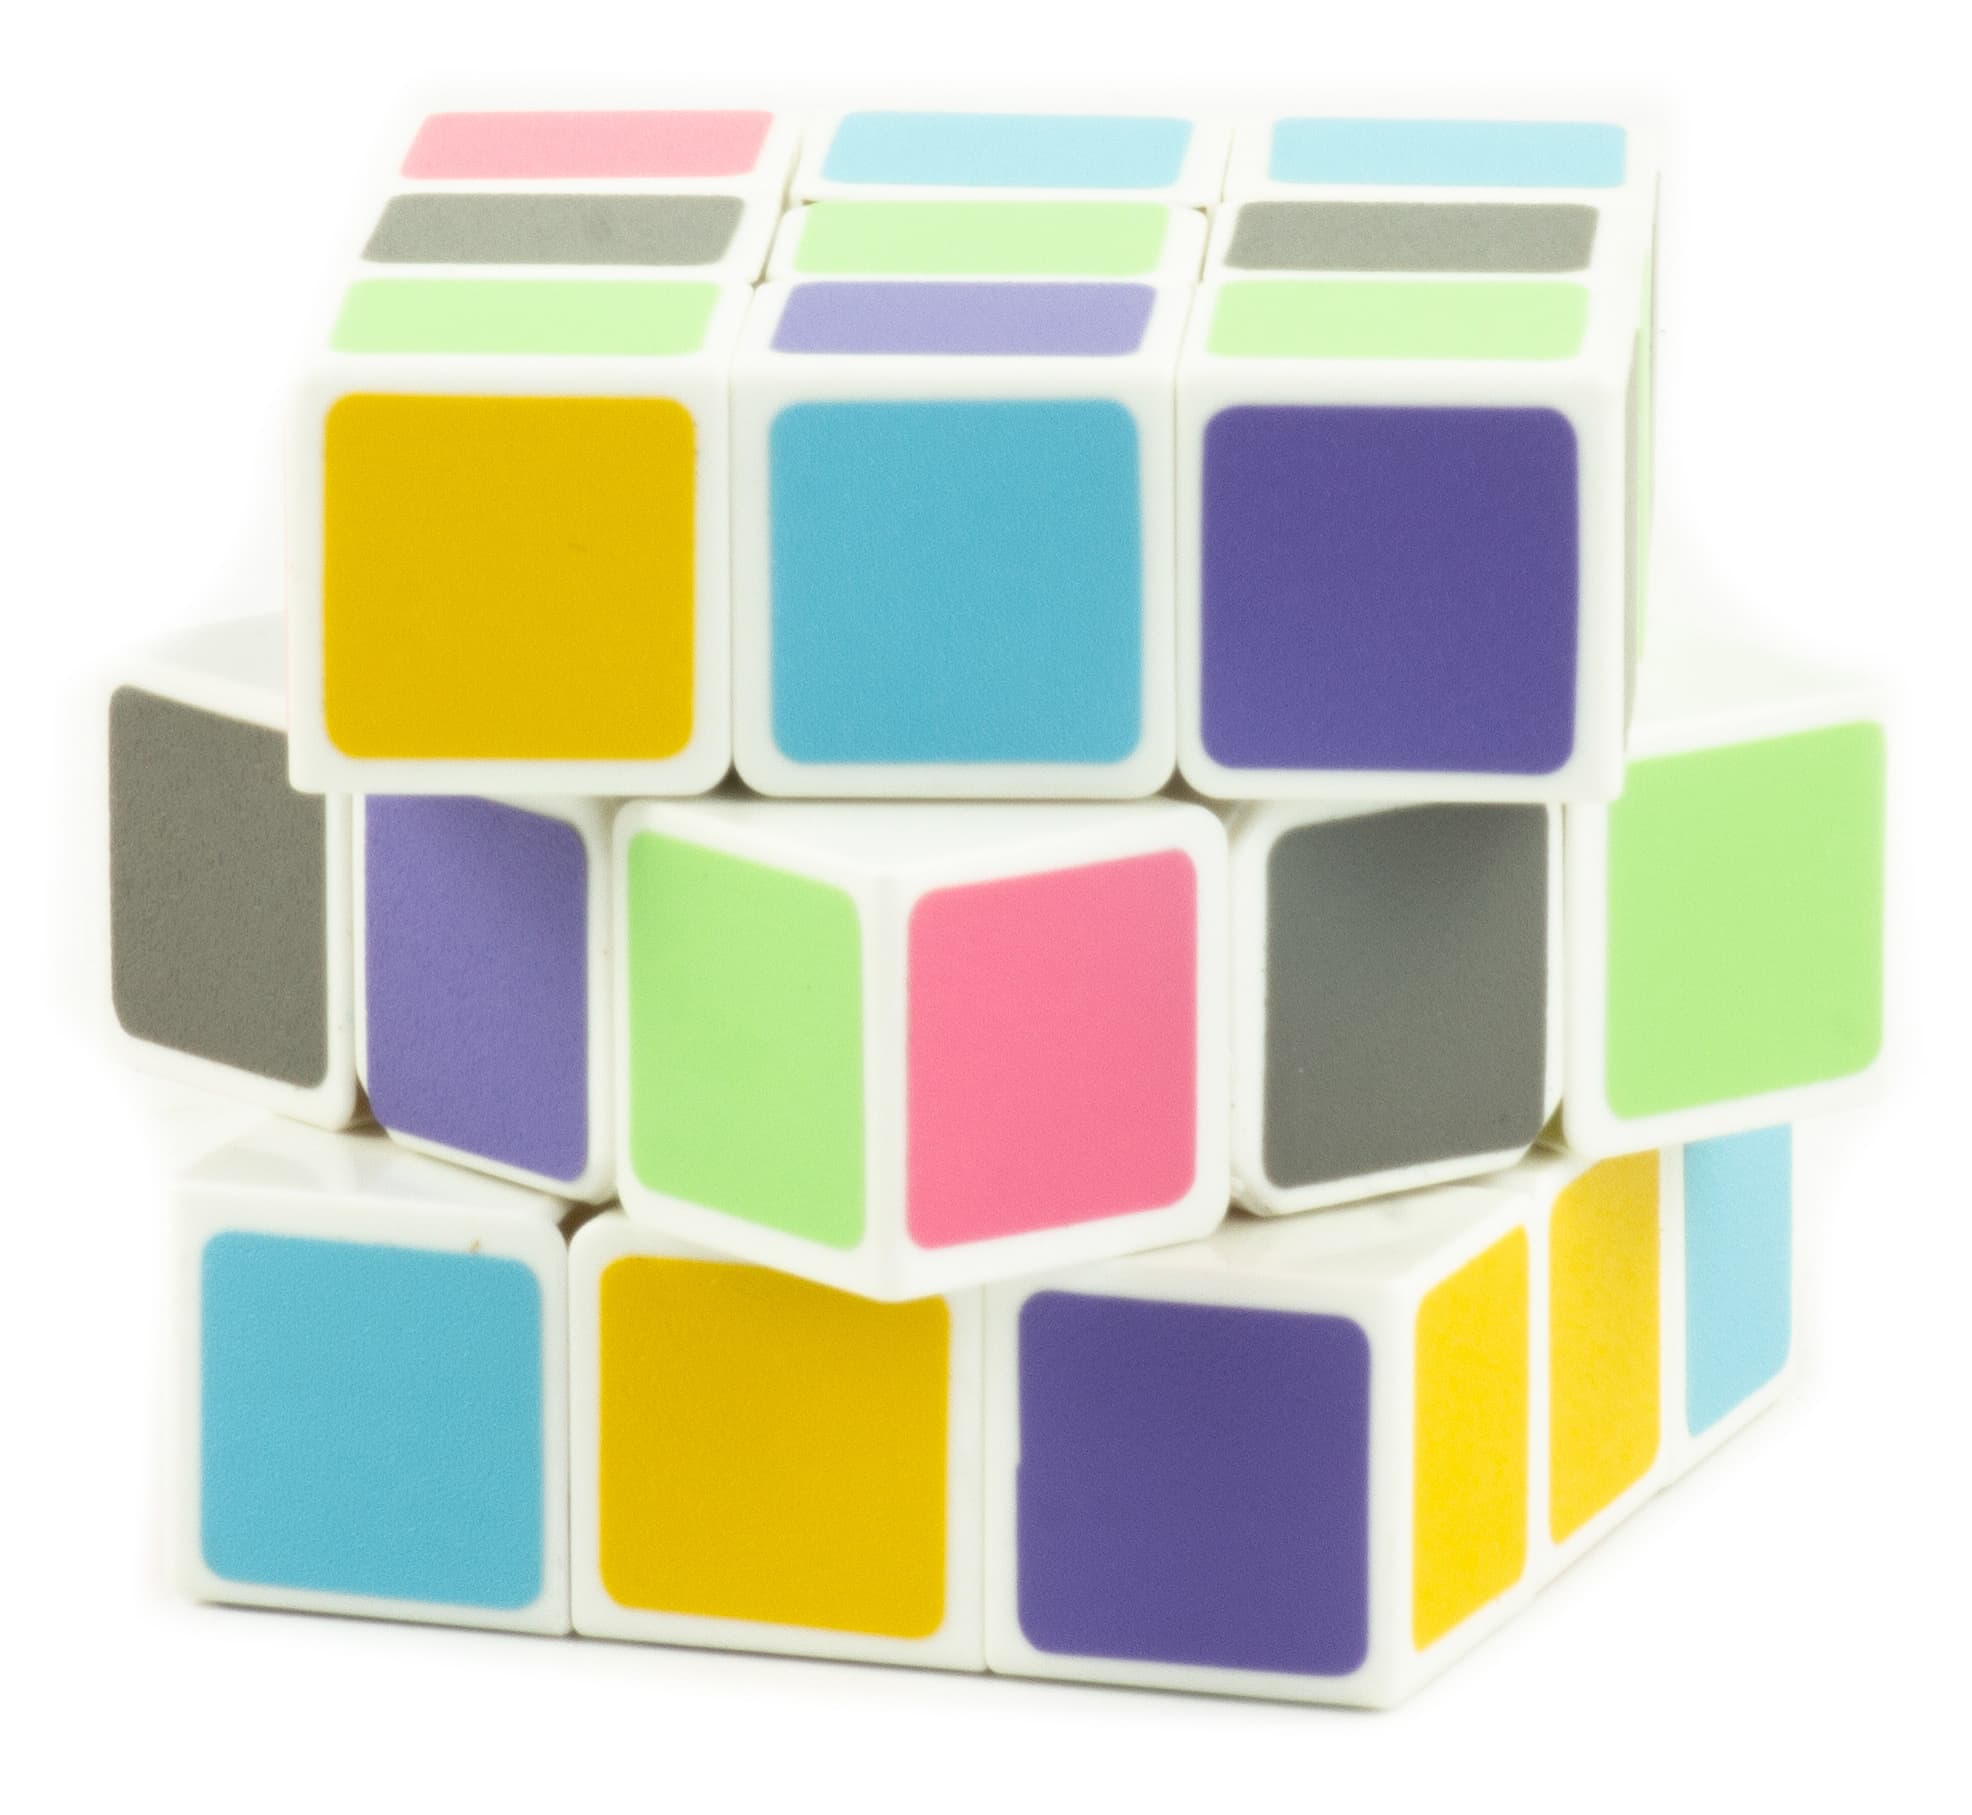 Головоломка Кубик Рубика 3х3 Magic Cube, R6-814 / 1 шт.